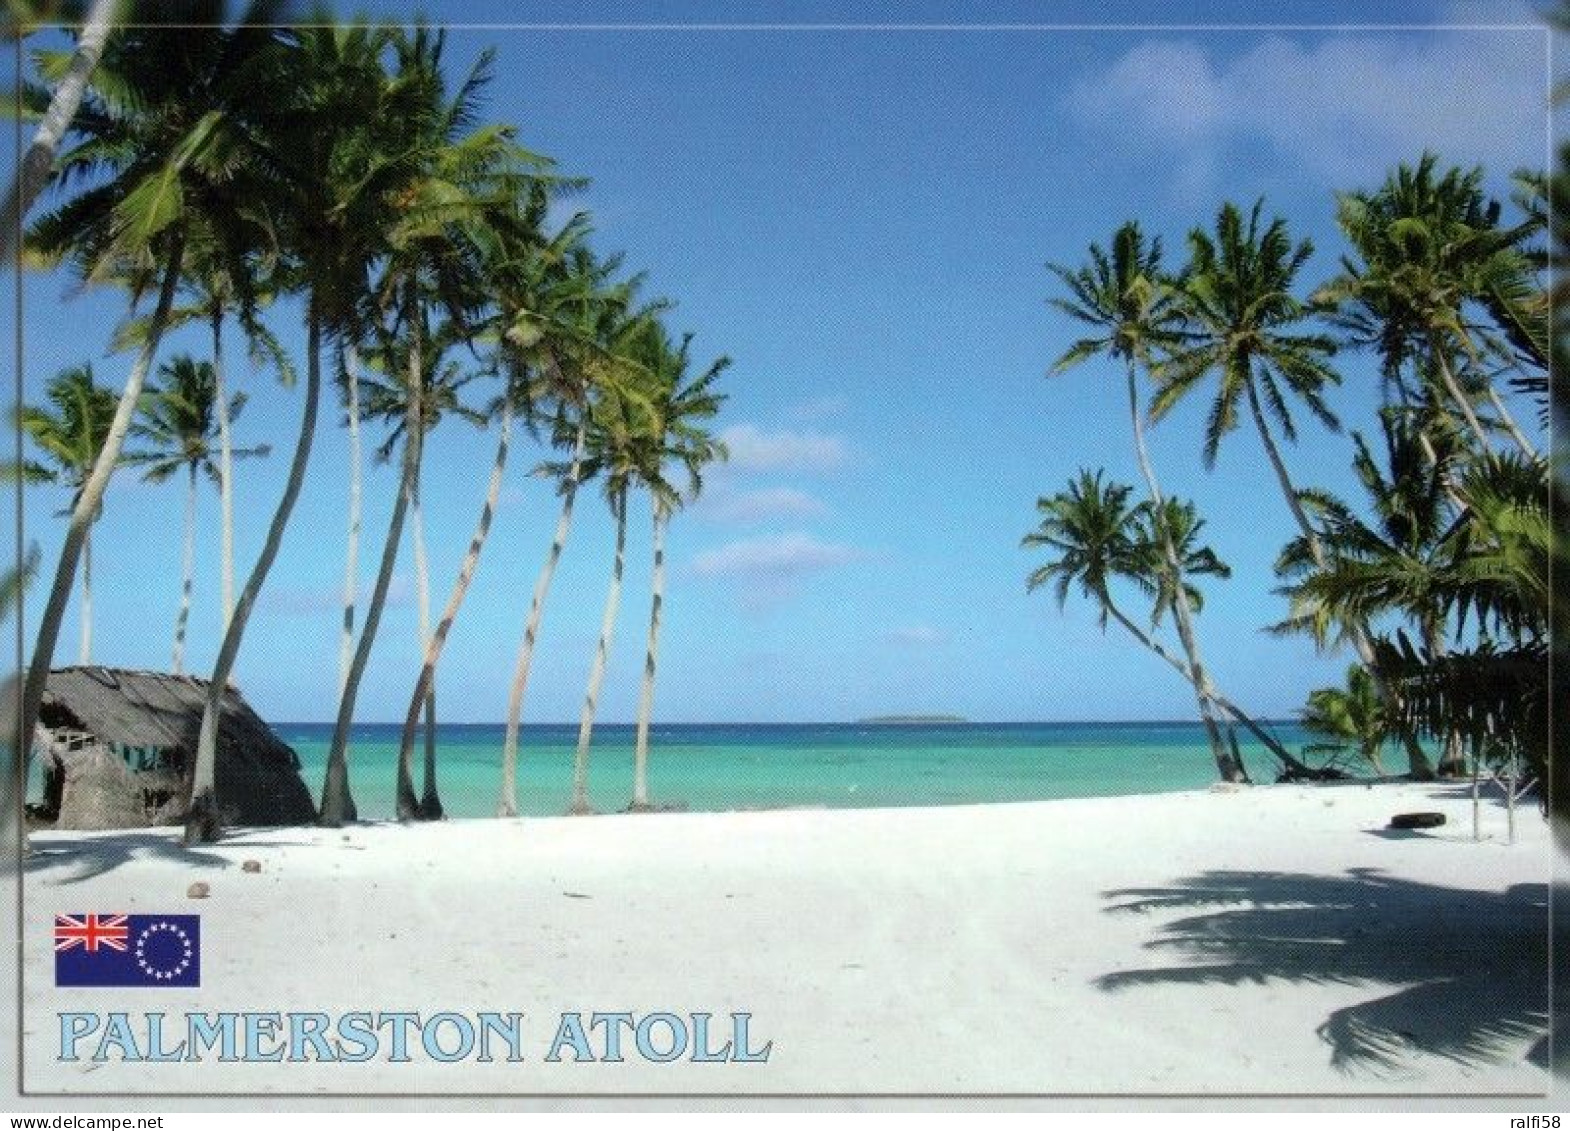 1 AK Palmerston Atoll Zu Den Cook Islands * Das Palmerston Atoll Gehört Zu Den Südlichen Cookinseln * - Cook